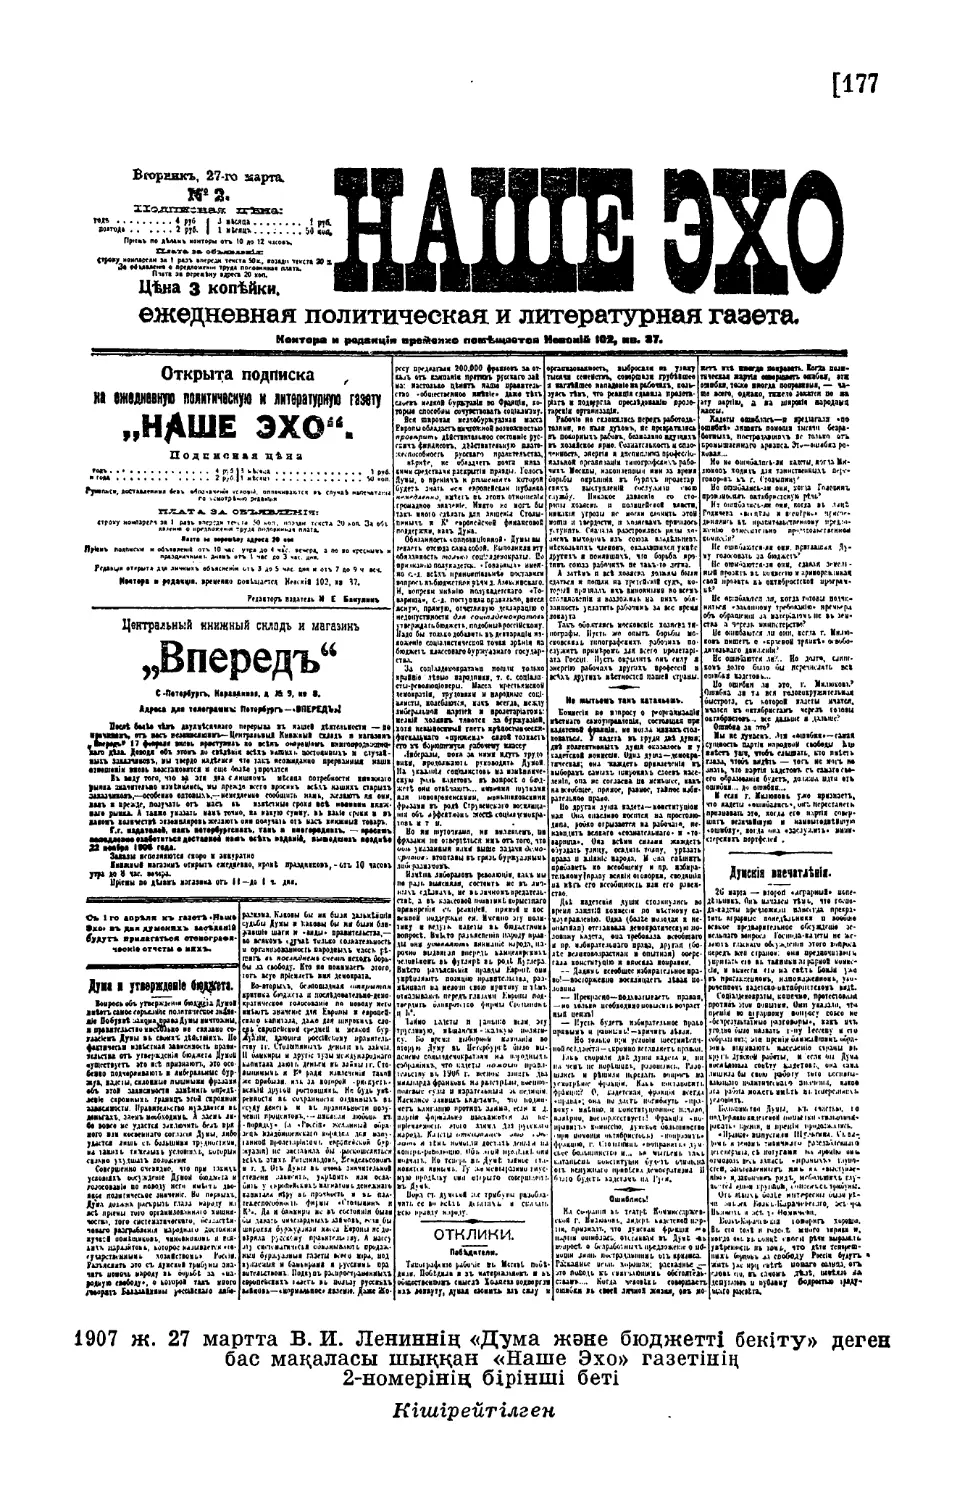 1907 ж. 27 мартта В. И. Лениннің «Дума және бюджетті бекіту» деген бас мақаласы шыққан «Наше Эхо» газетінің 2-номерінің бірінші беті